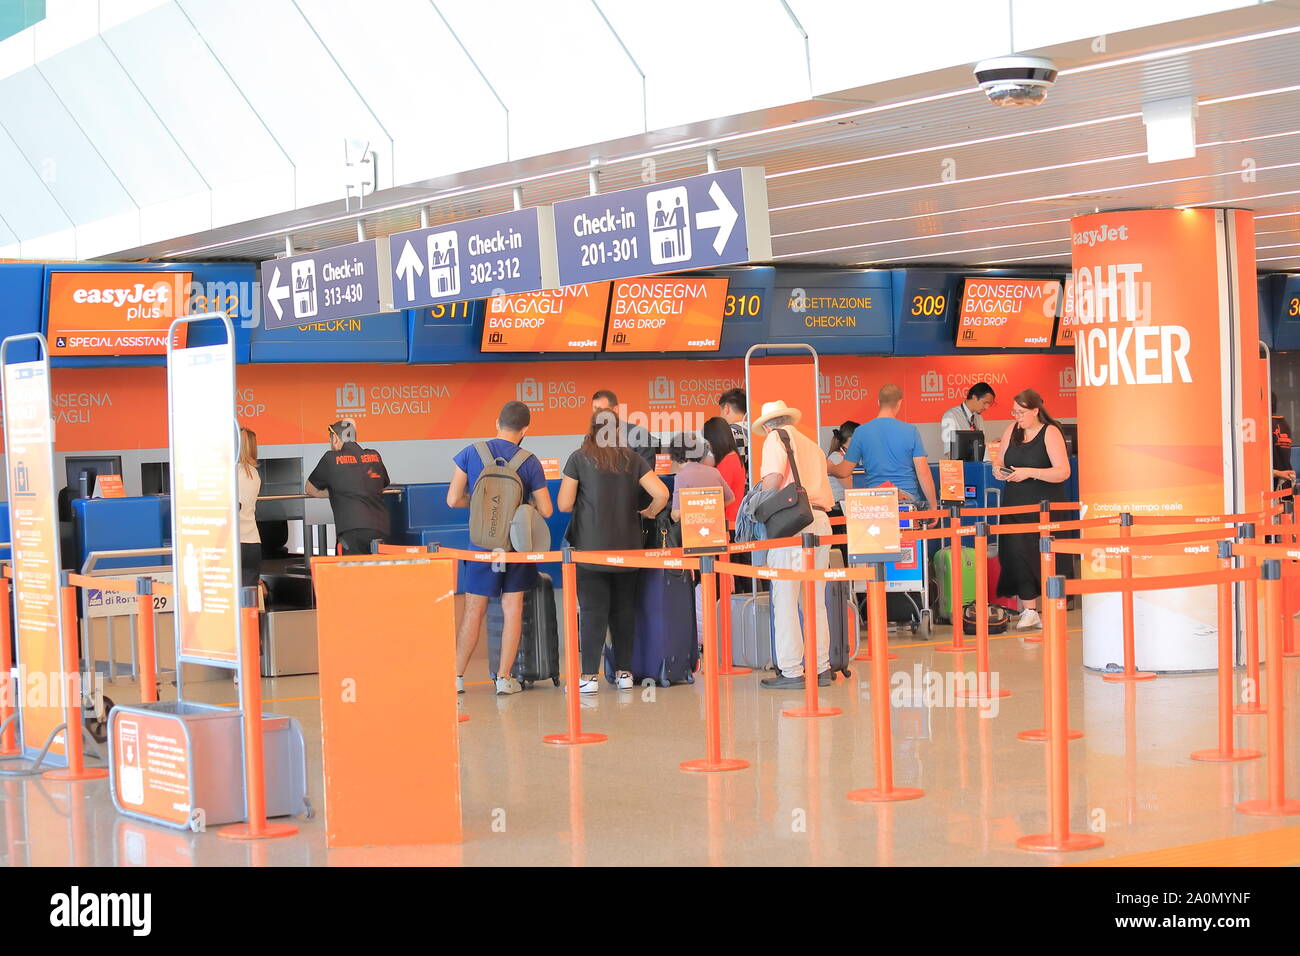 People check in at Easyjet check in counter Leonardo da Vinci-Fiumicino Airport Rome Italy Stock Photo